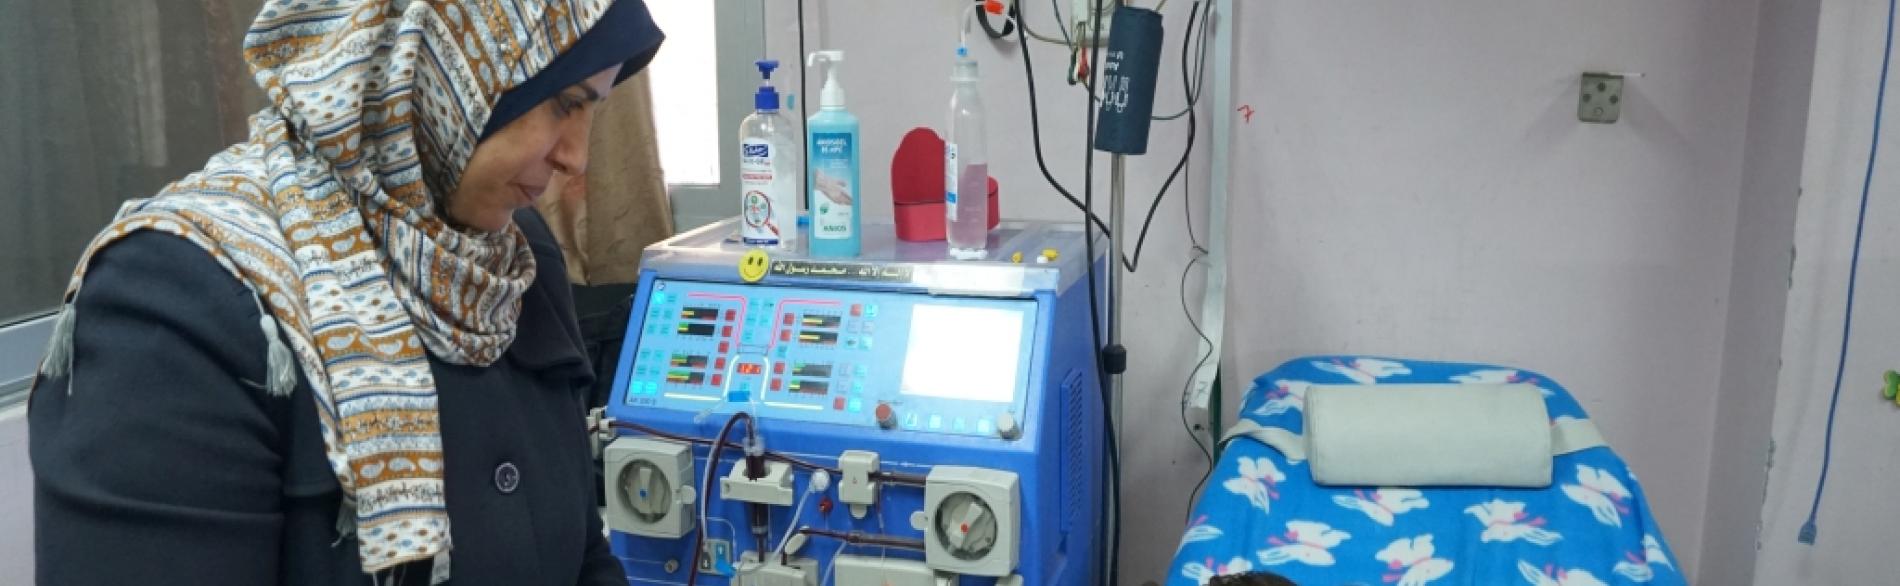 Yahia, a kidney dialysis patient at Ar Rantisi hospital. February 2018. ©  Photo by OCHA